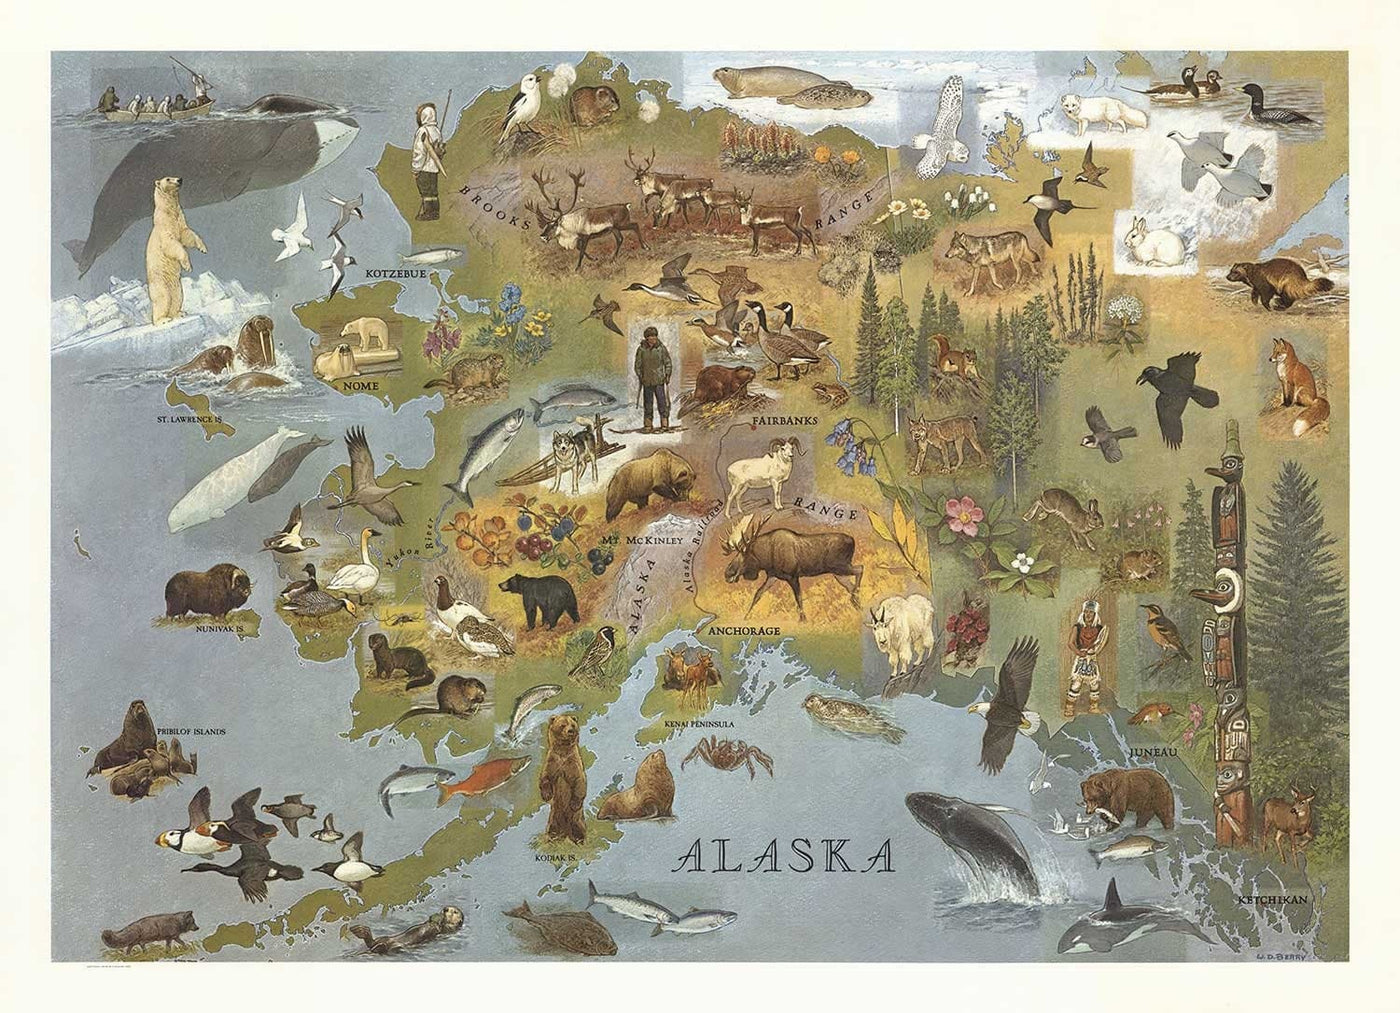 Alte Karte von Alaska von WD Berry, 1967 - Eskimos, Inuits & Tiere - Anchorage, Yukon, Denali / McKinley